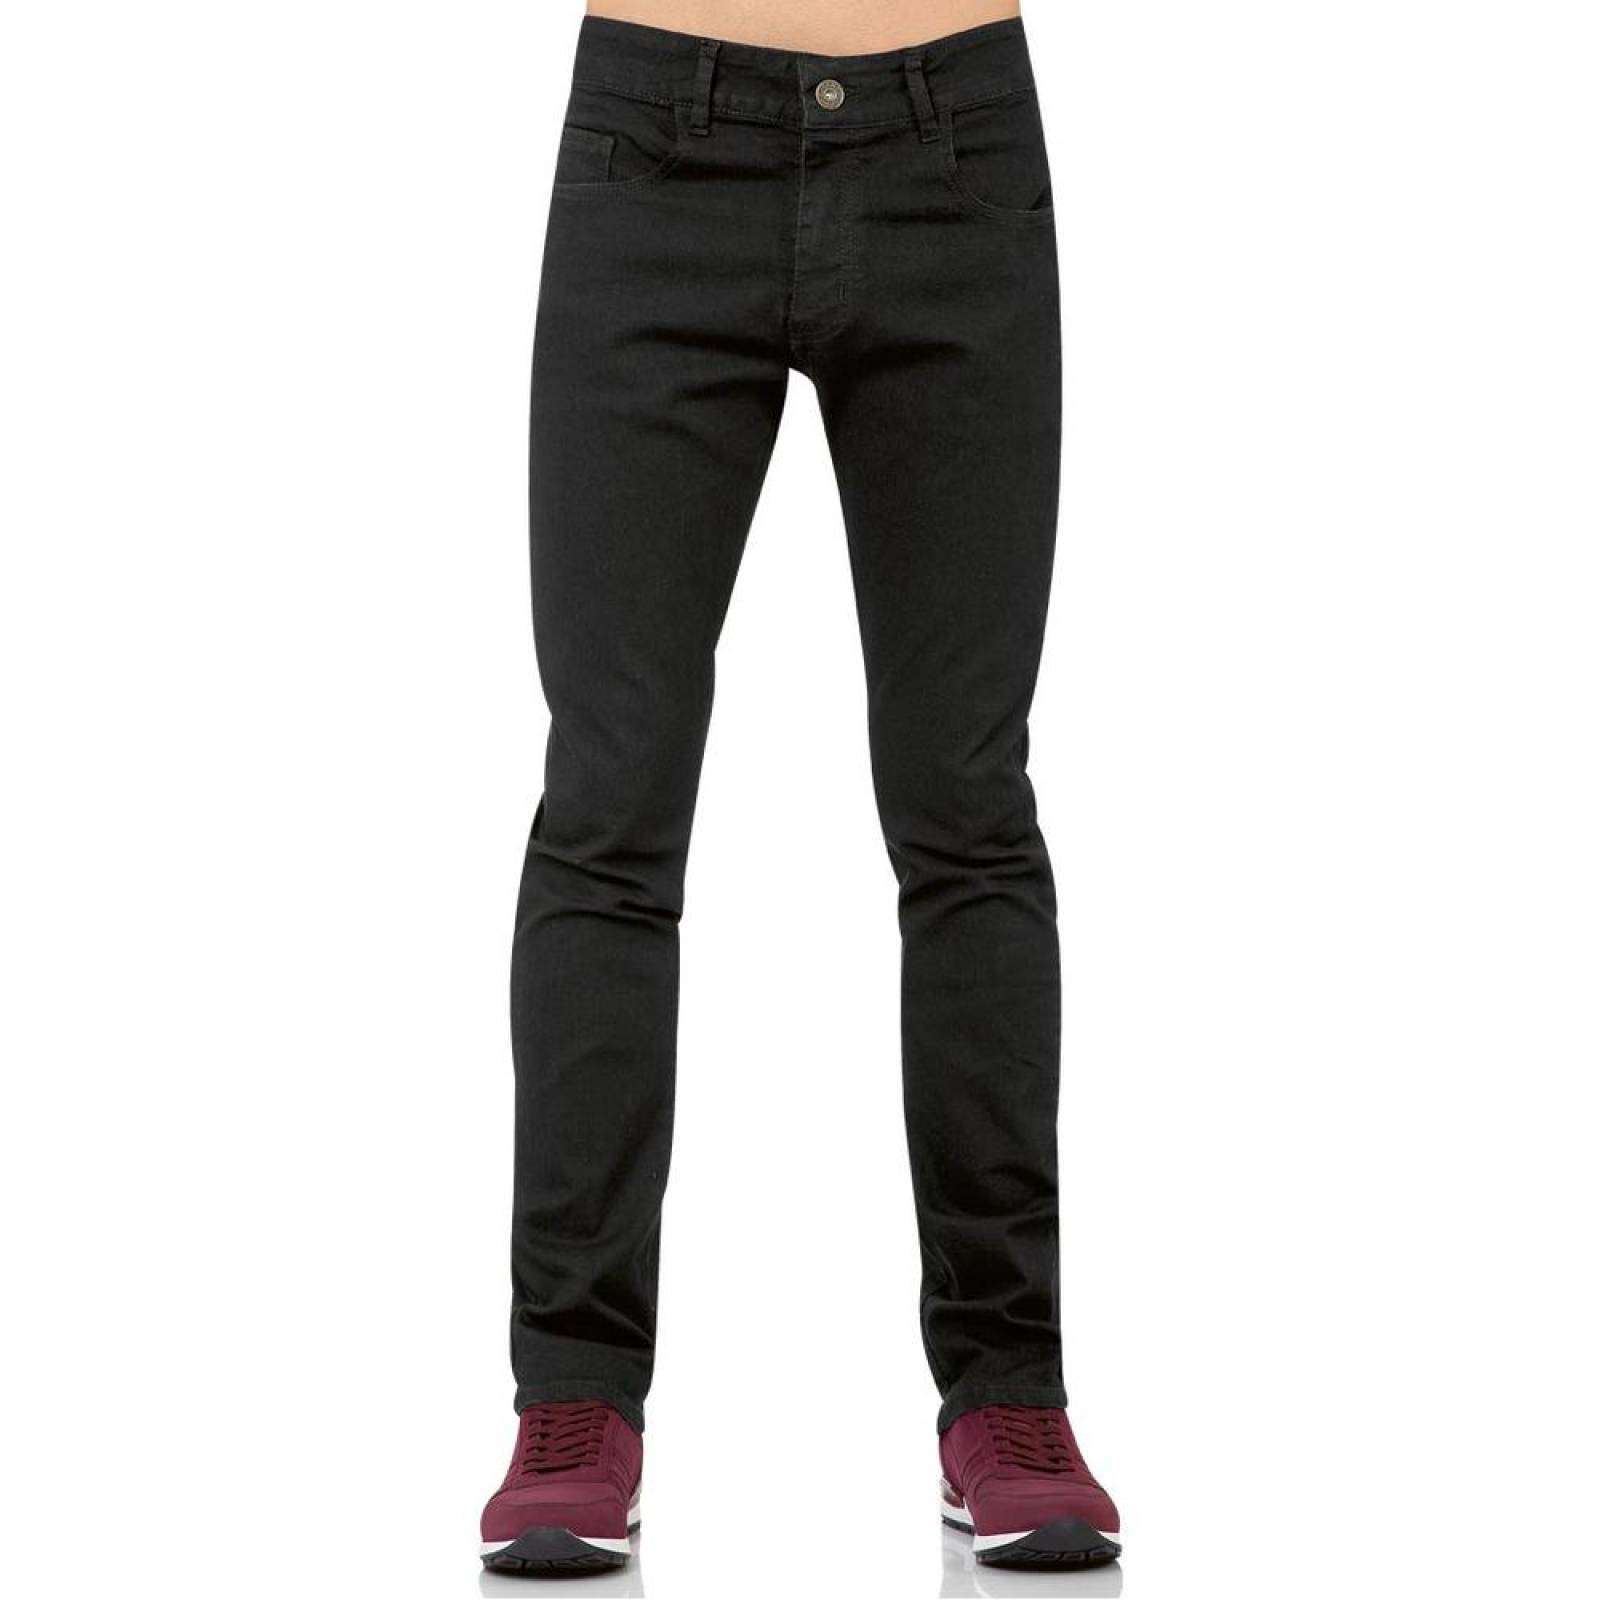 Jeans Básico Hombre Salvaje Tentación Negro 63103301 Mezclilla Stretch 